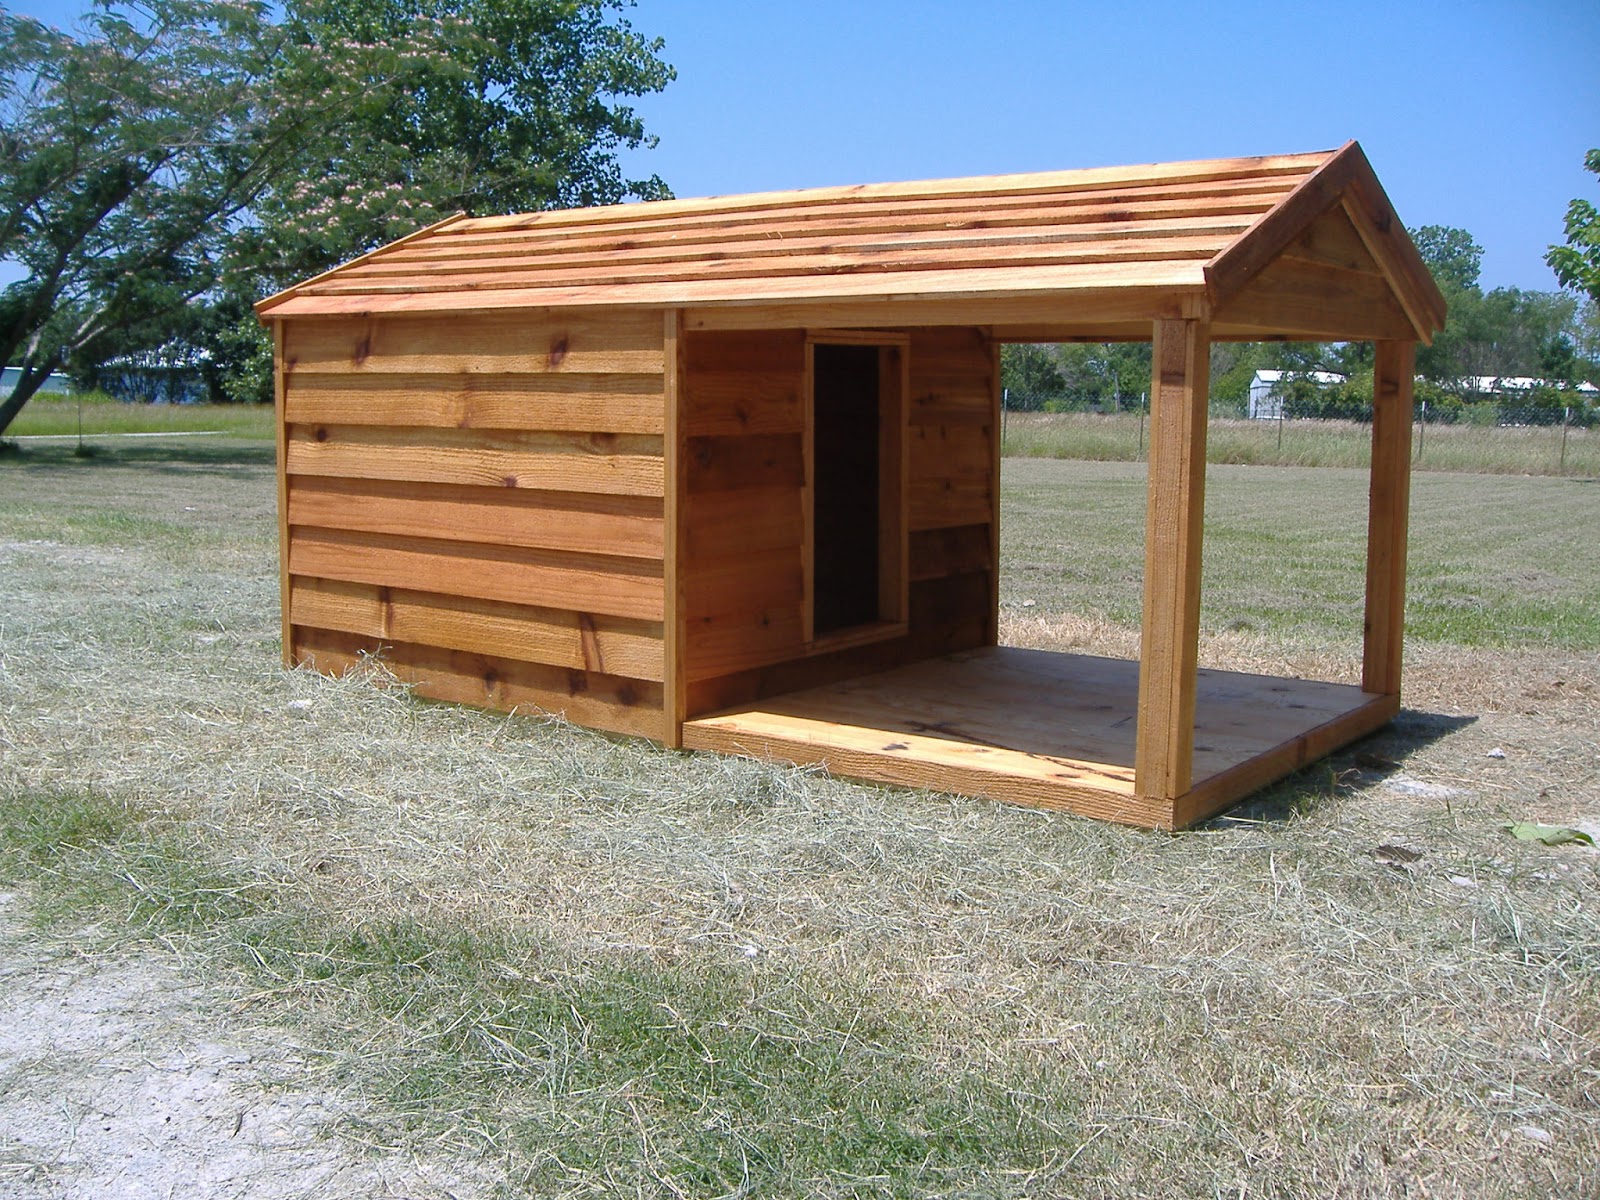  Ac Heated Insulated Dog House: Custom Cedar Dog House with Porch